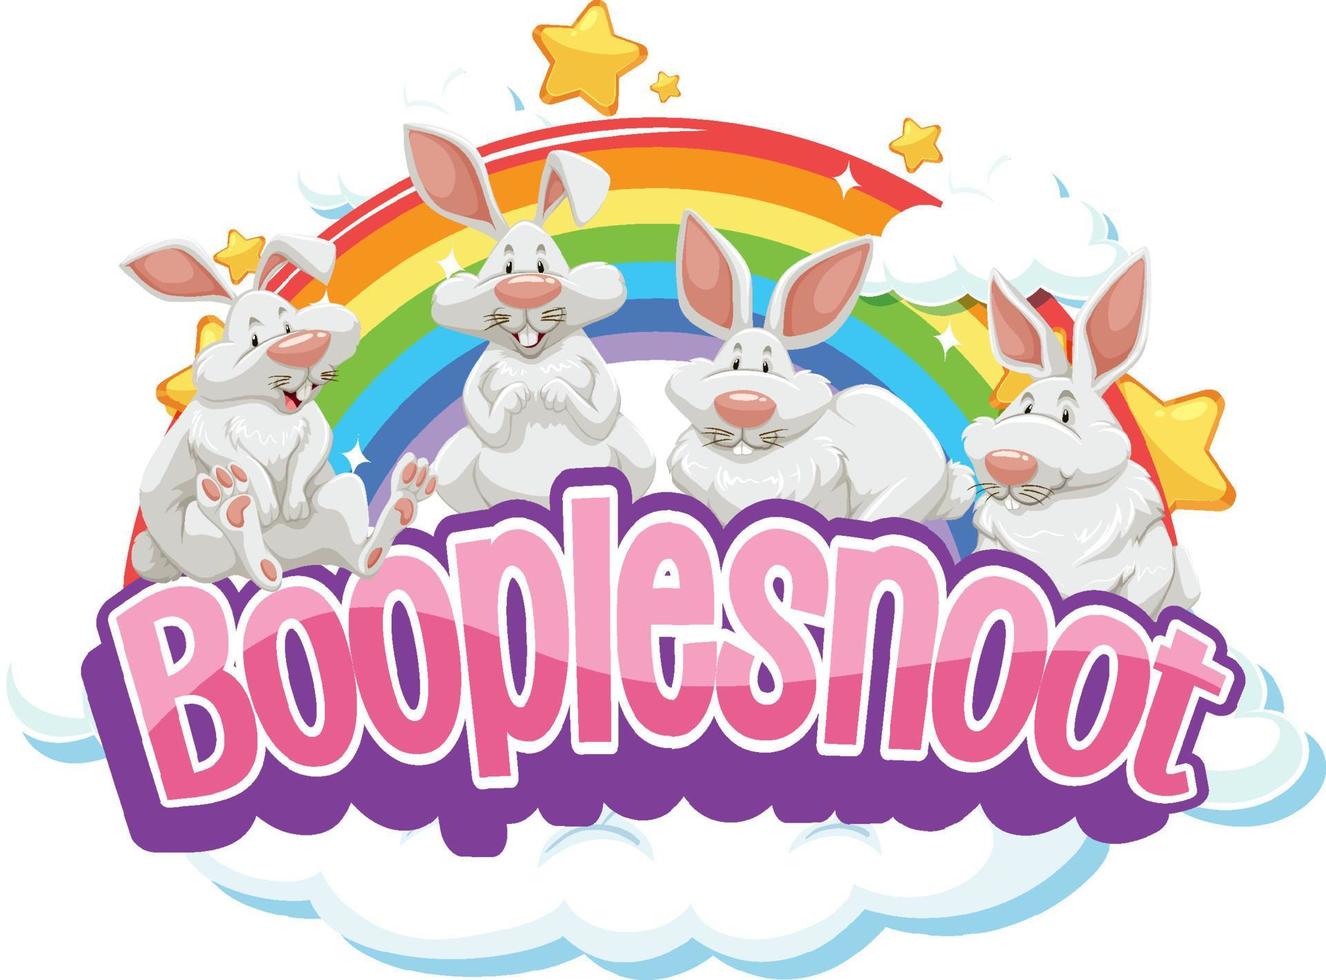 schattige konijnen op boople snoot lettertype met regenboog vector